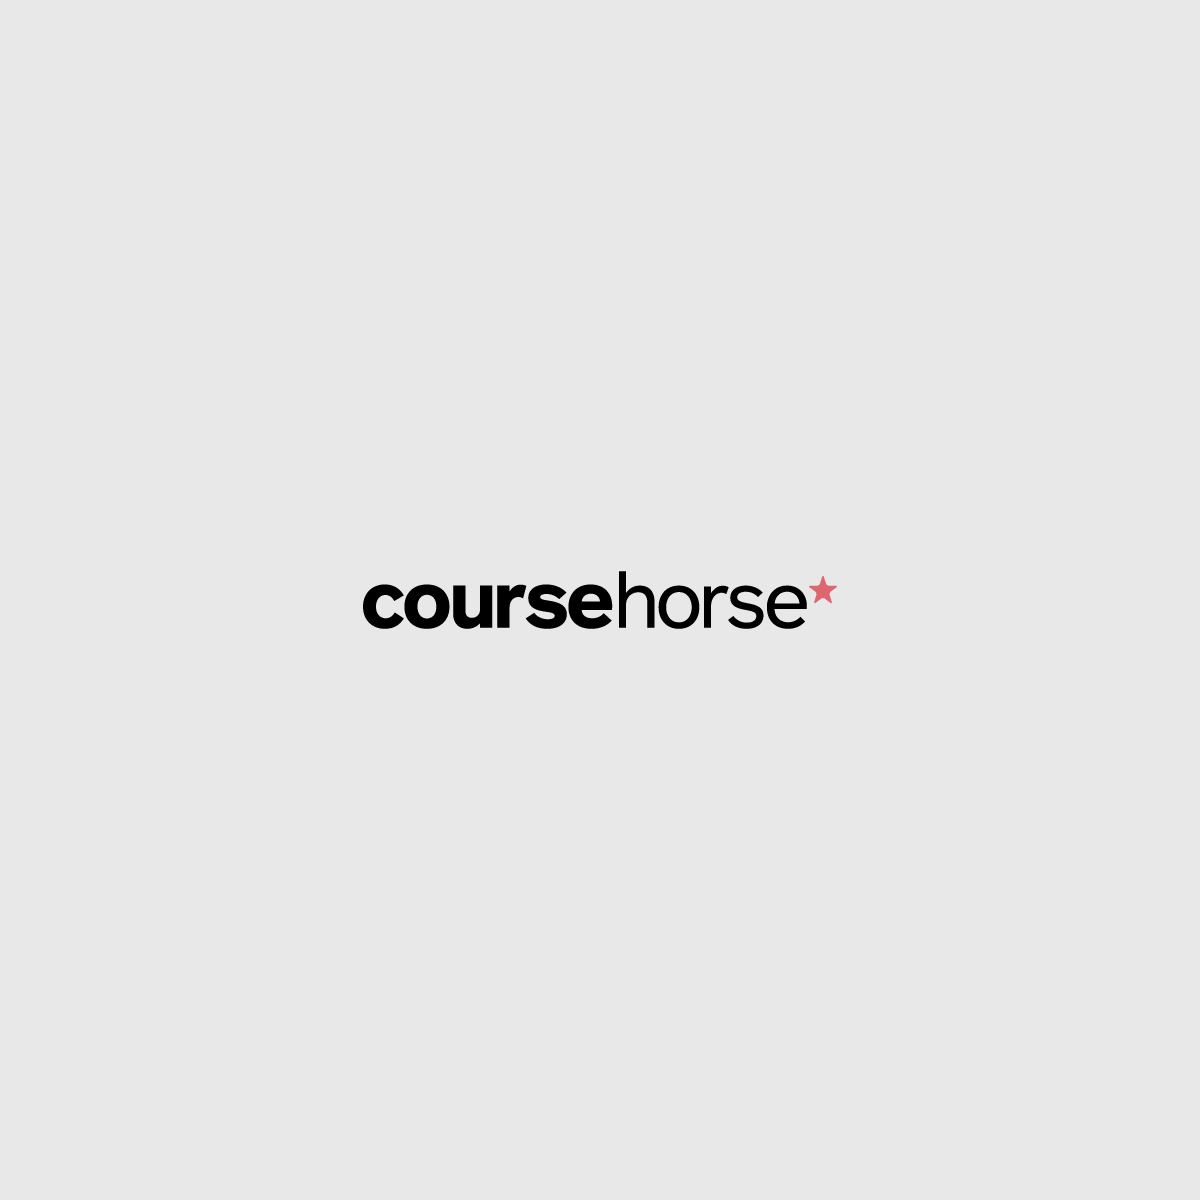 coursehorse